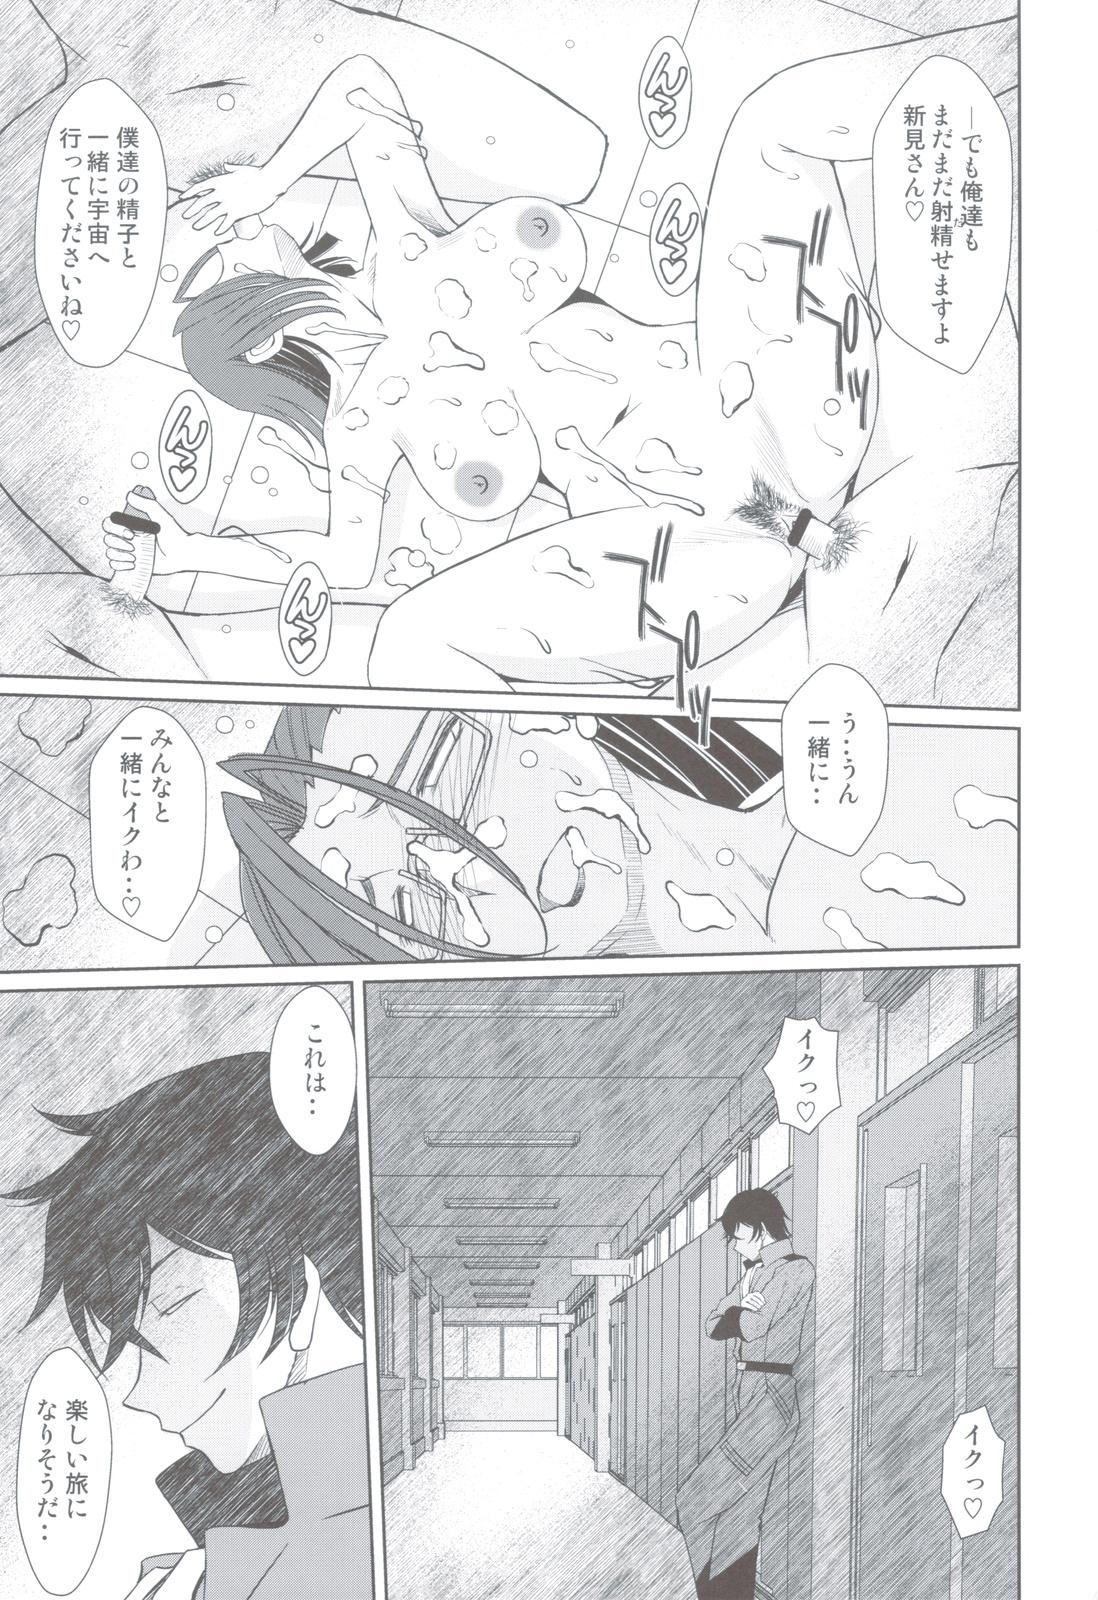 Mas 2199-nen no Niimi Kaoru - Space battleship yamato Sex Toys - Page 32